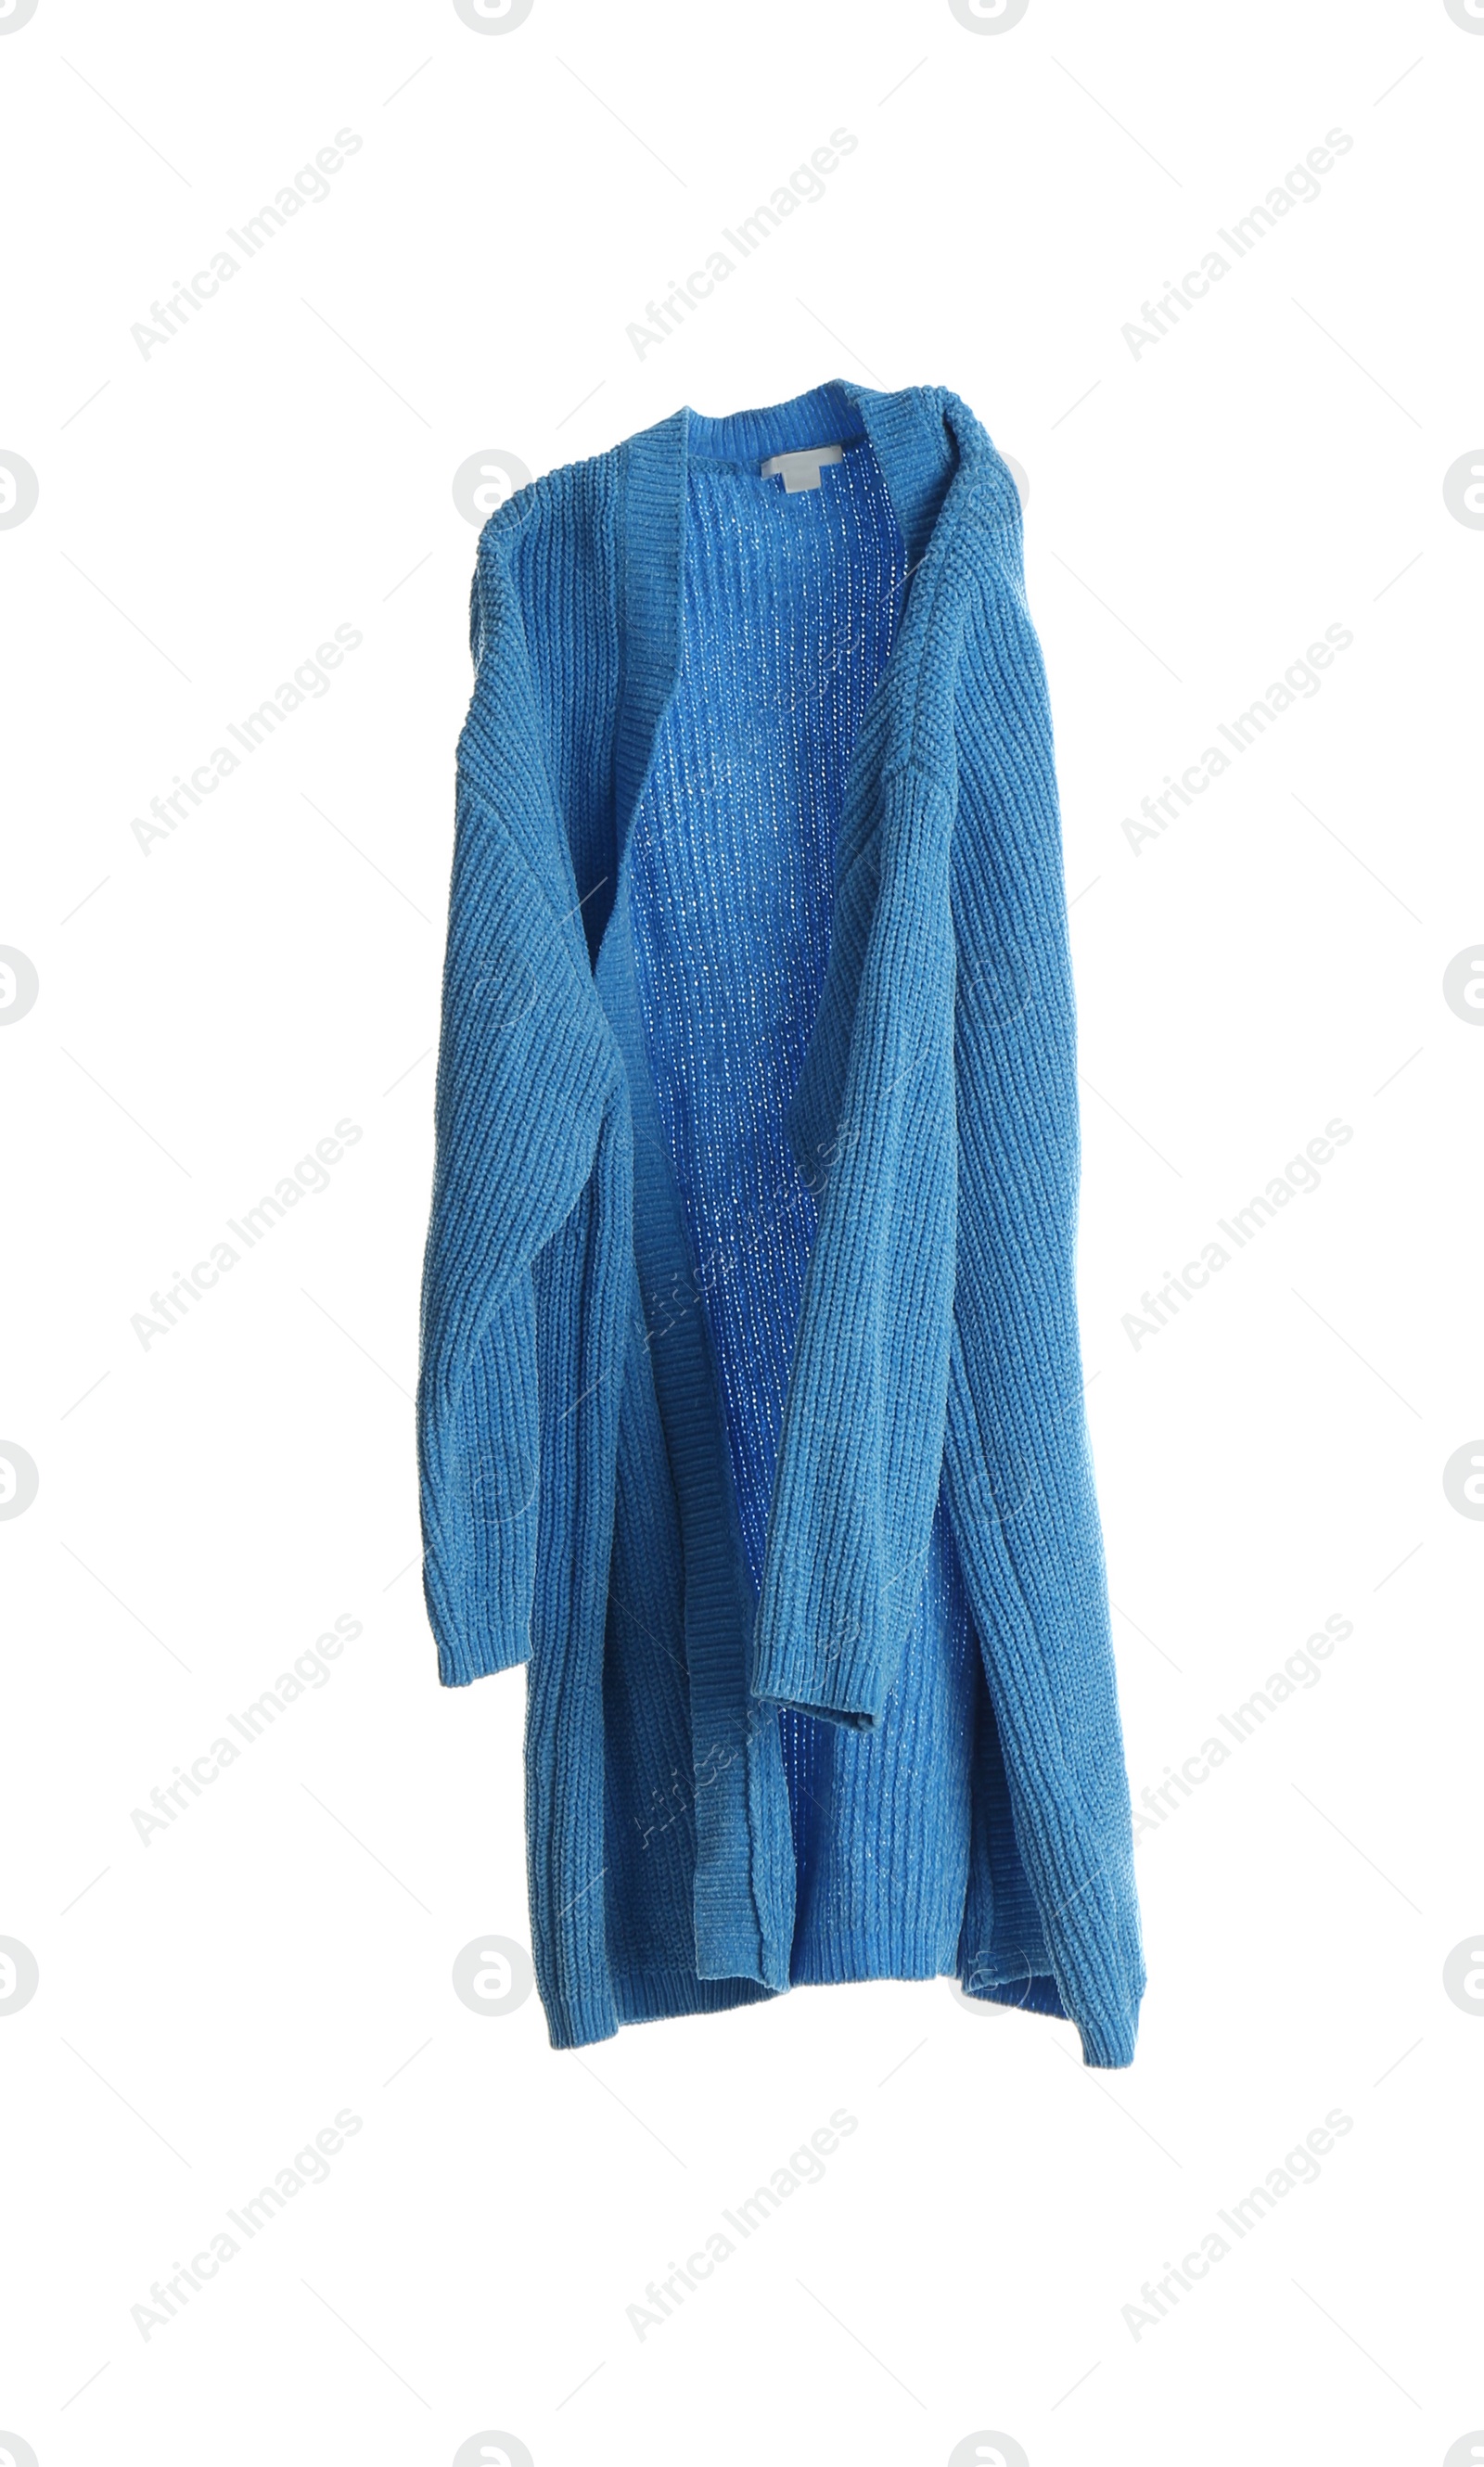 Photo of Blue cardigan isolated on white. Stylish clothes